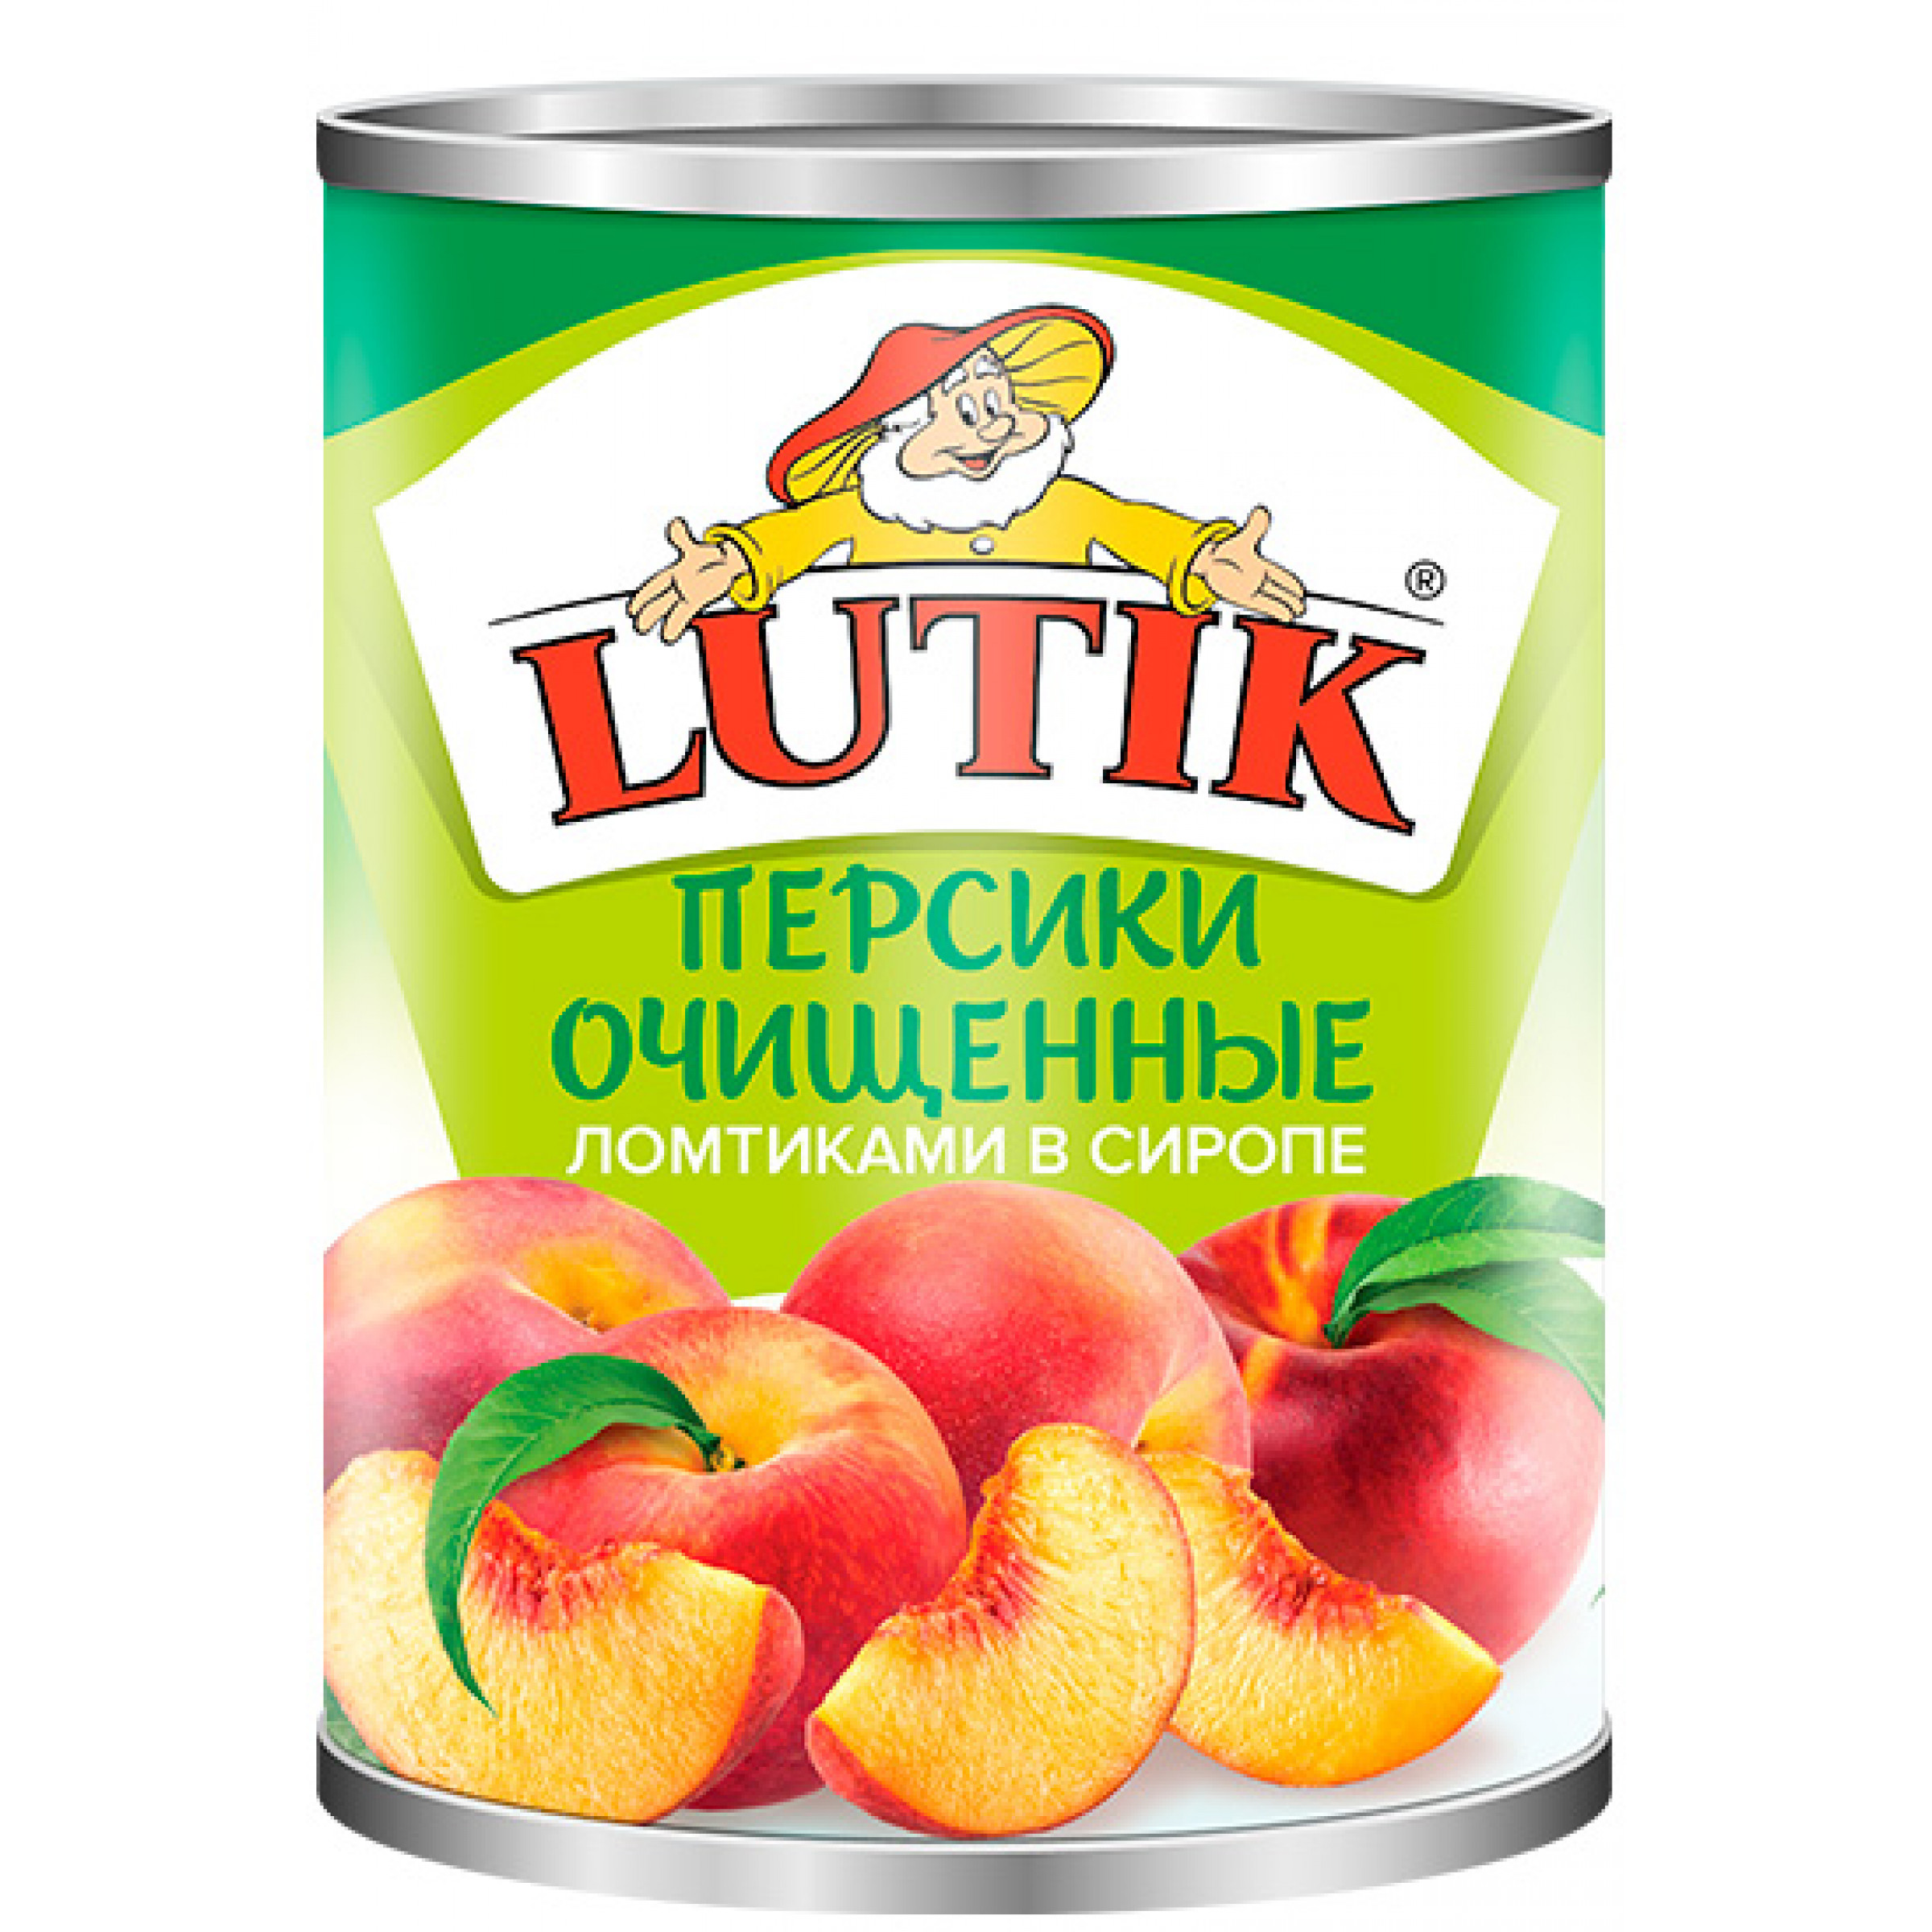 Персики дольки в сиропе LUTIK, 850гр